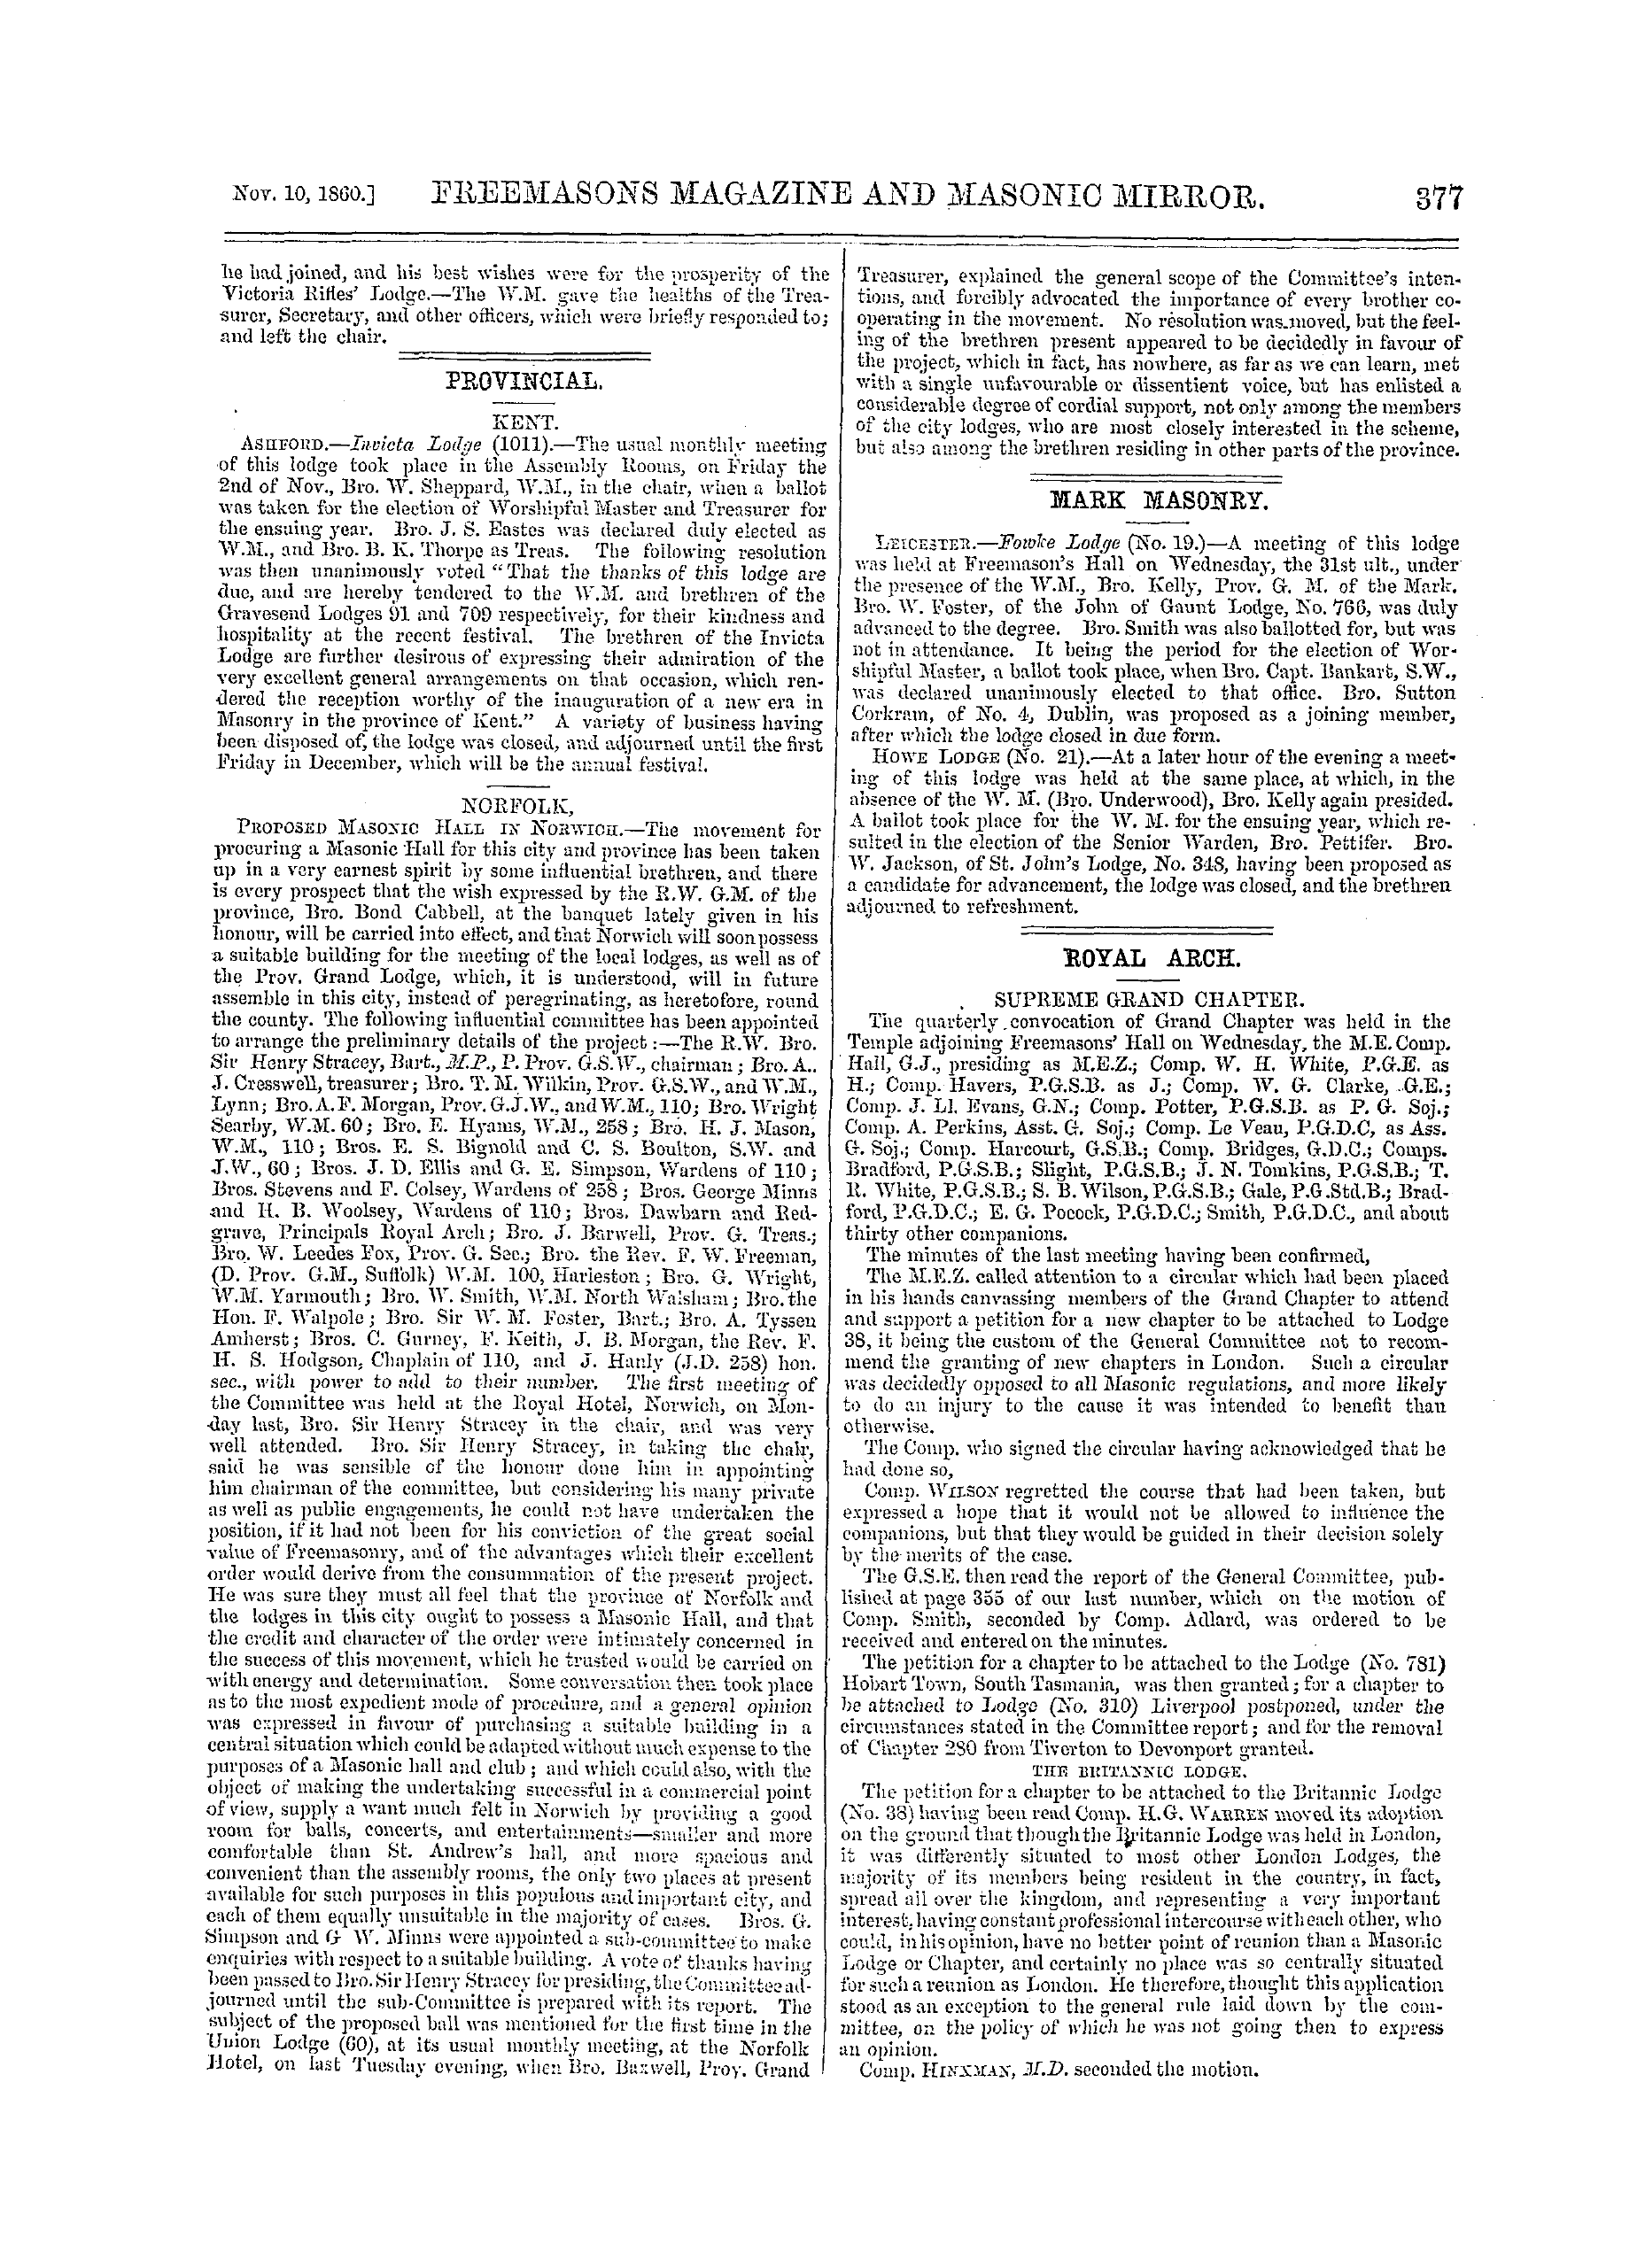 The Freemasons' Monthly Magazine: 1860-11-10: 17